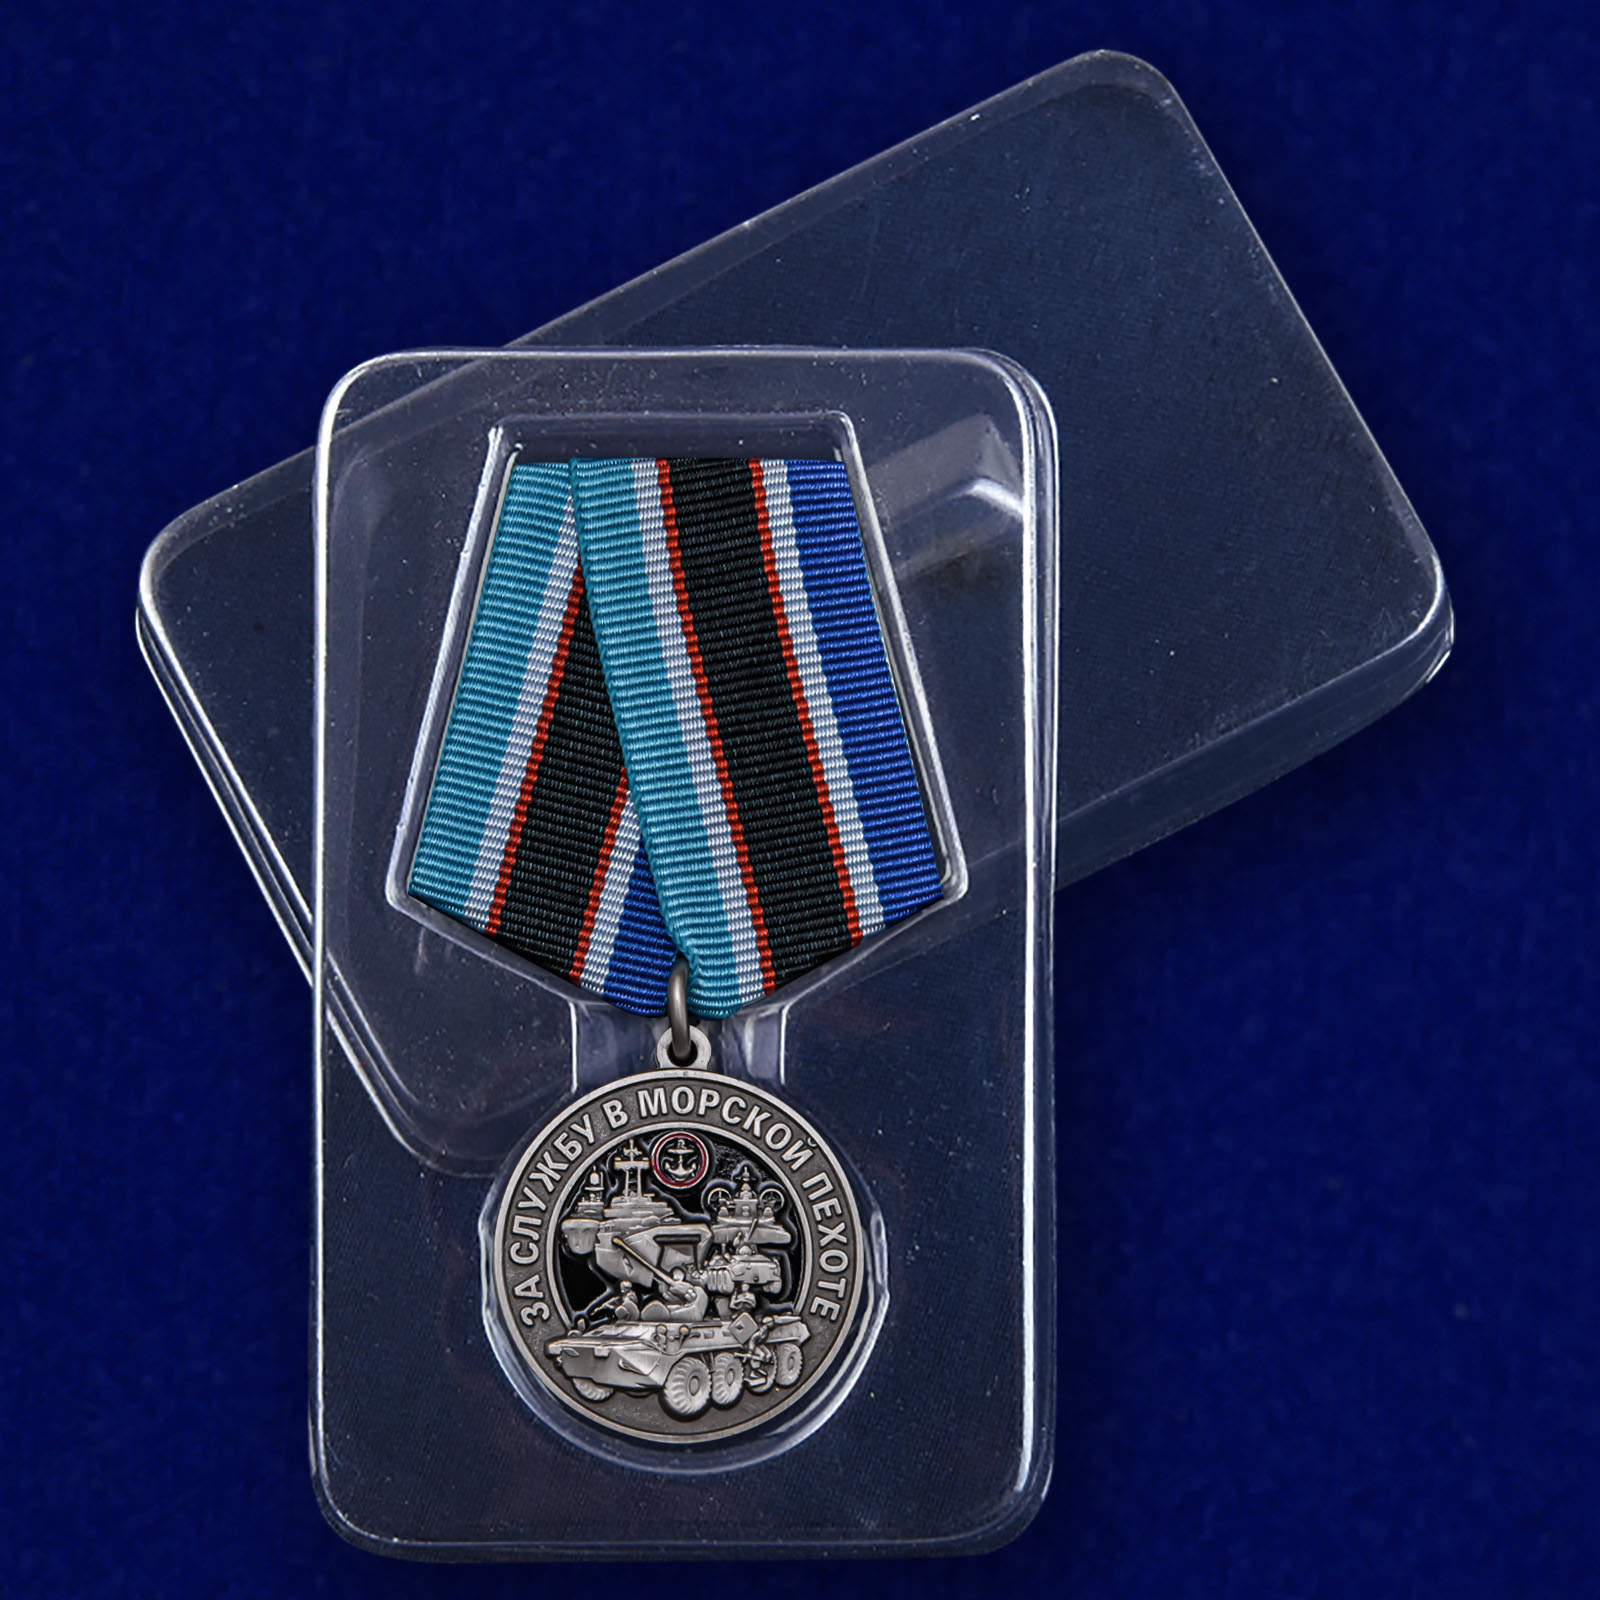 Памятная медаль "За службу в Морской пехоте" 